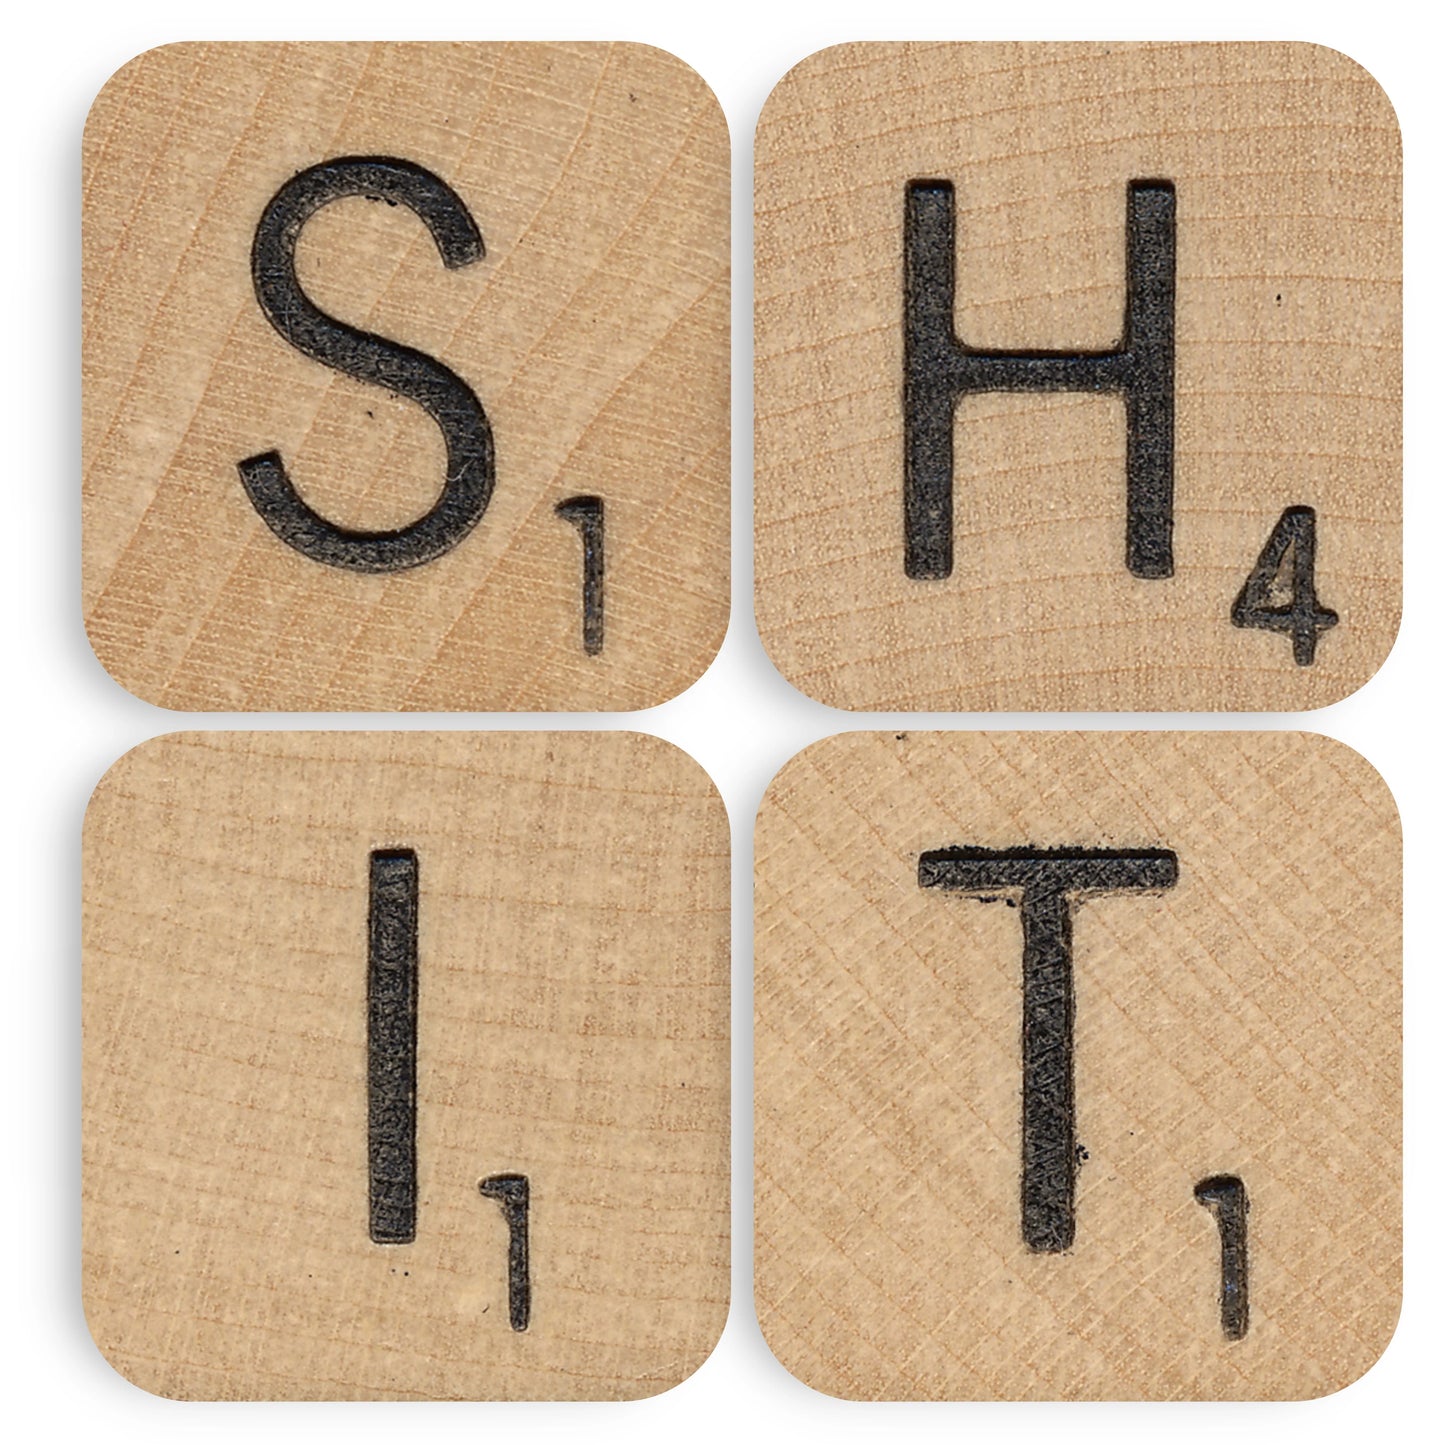 Acrylic Scrabble Tiles Coaster Set of 4: Shit